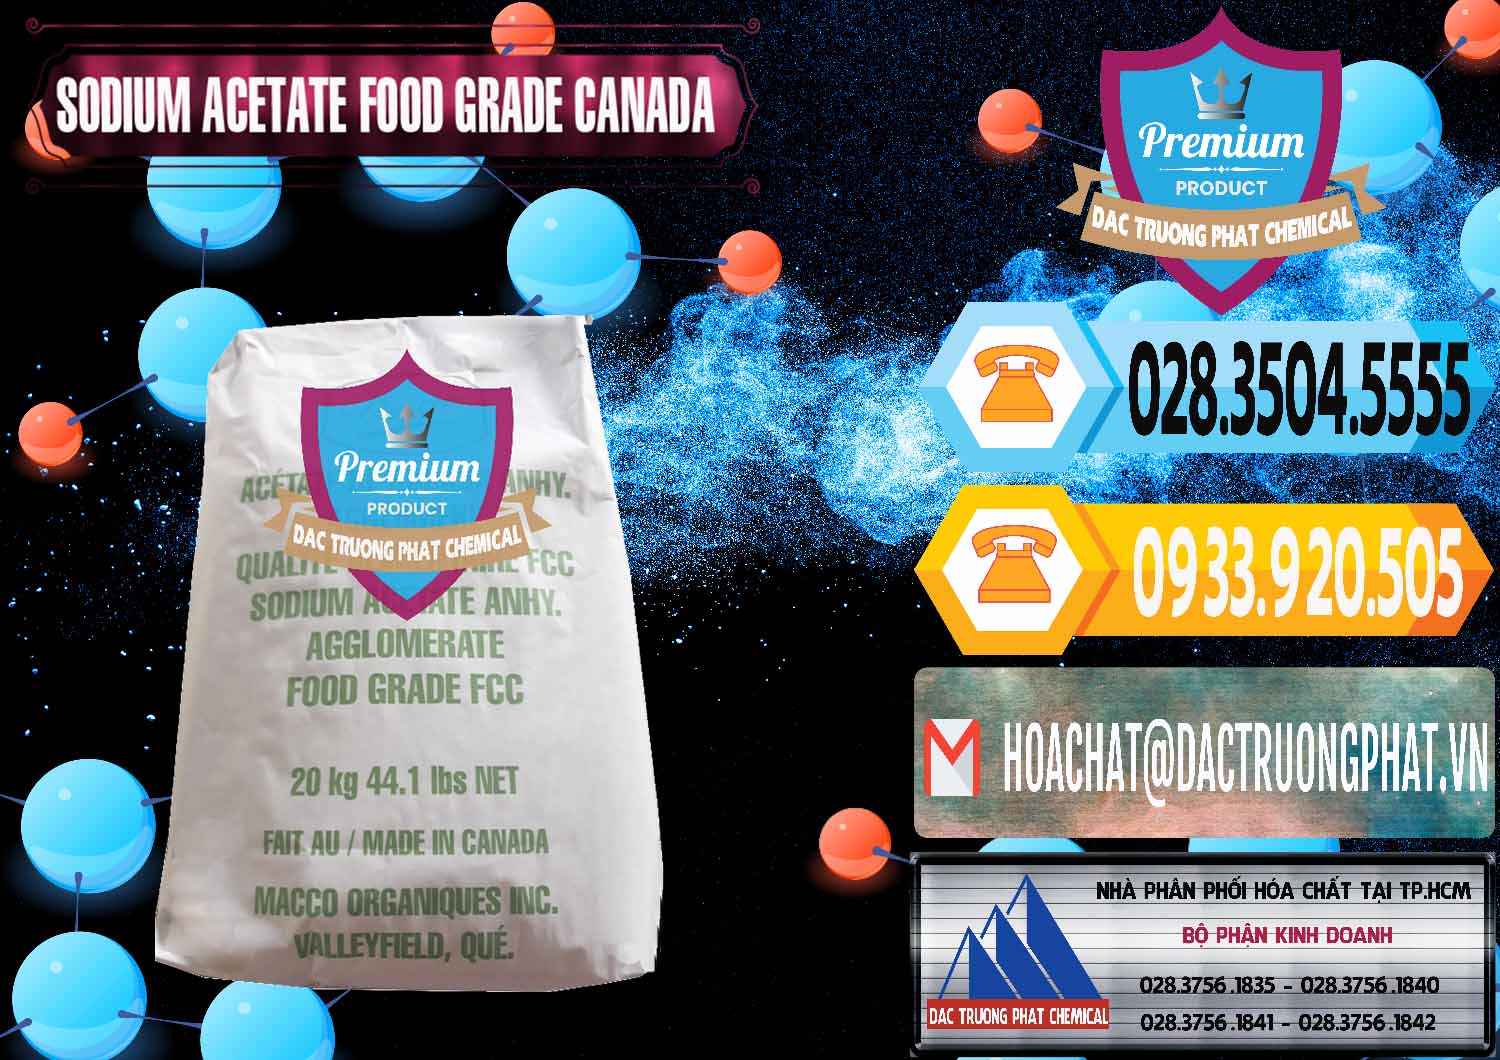 Nơi chuyên kinh doanh và bán Sodium Acetate - Natri Acetate Food Grade Canada - 0282 - Nhà phân phối và nhập khẩu hóa chất tại TP.HCM - hoachattayrua.net